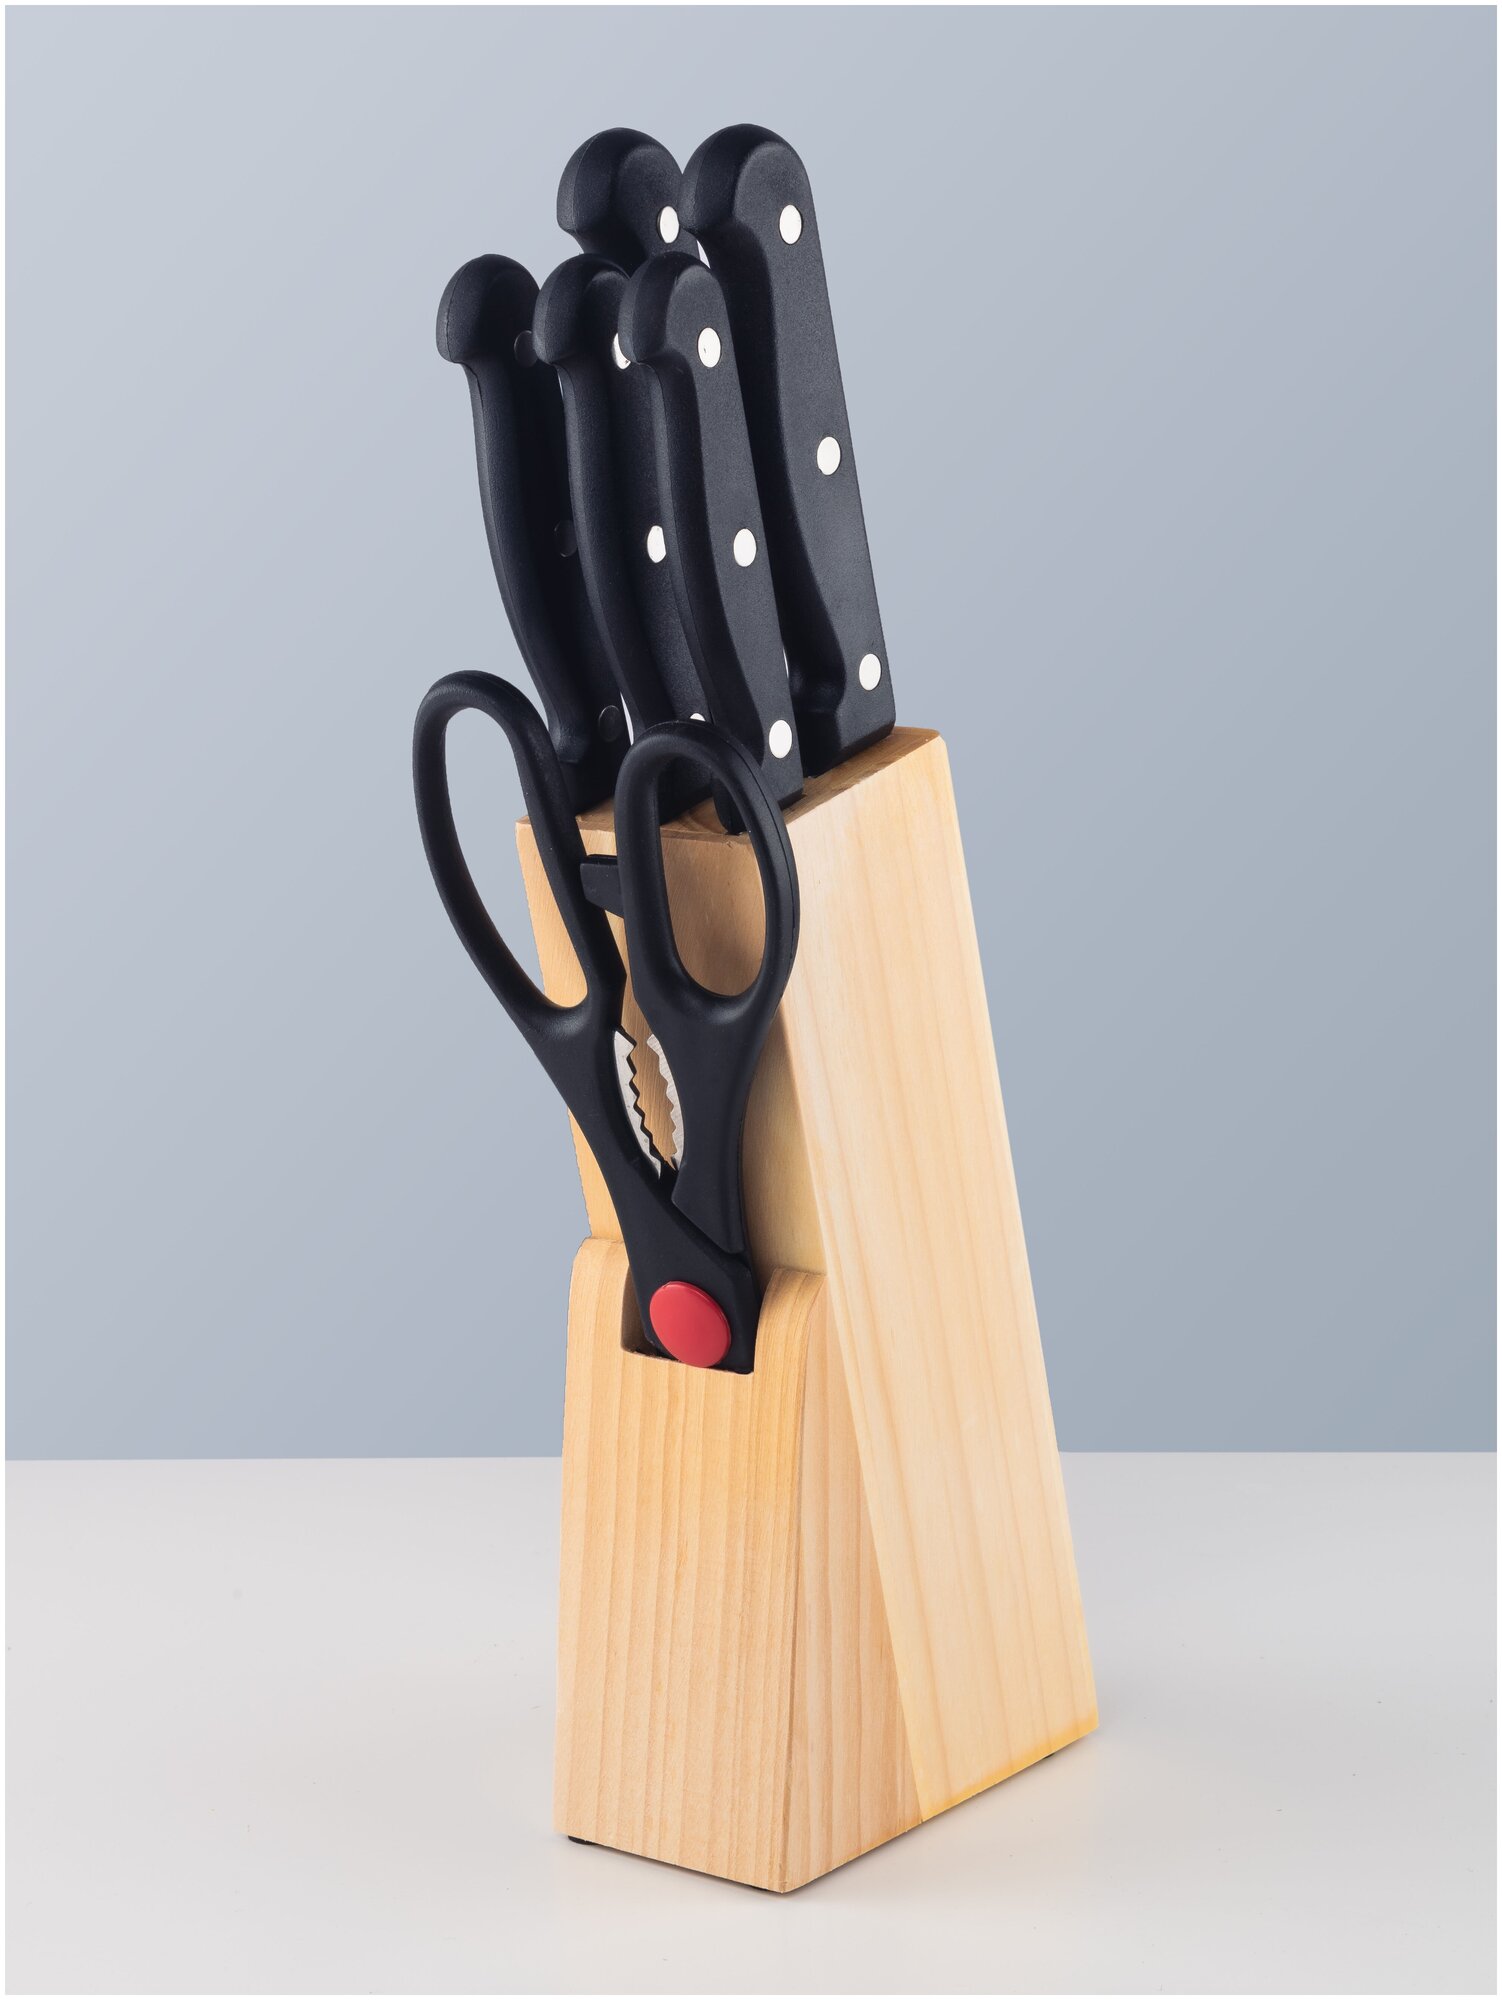 Кухонные ножи набор из 5 ножей и ножниц